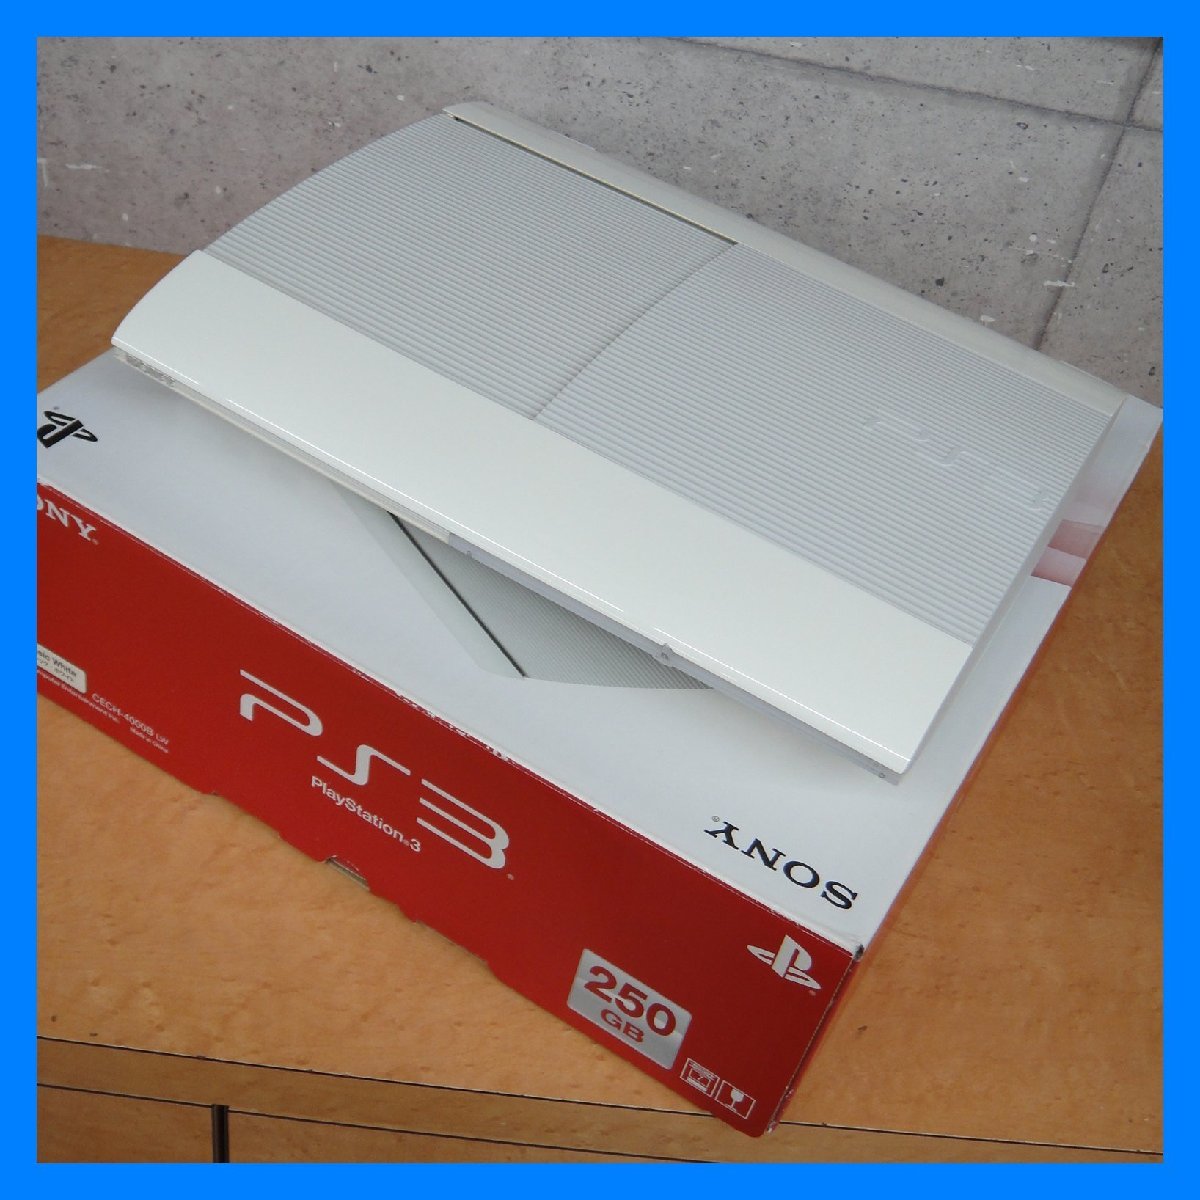 ソニー PS3 本体 CECH-4000B 250GB クラシック・ホワイト FW4.65